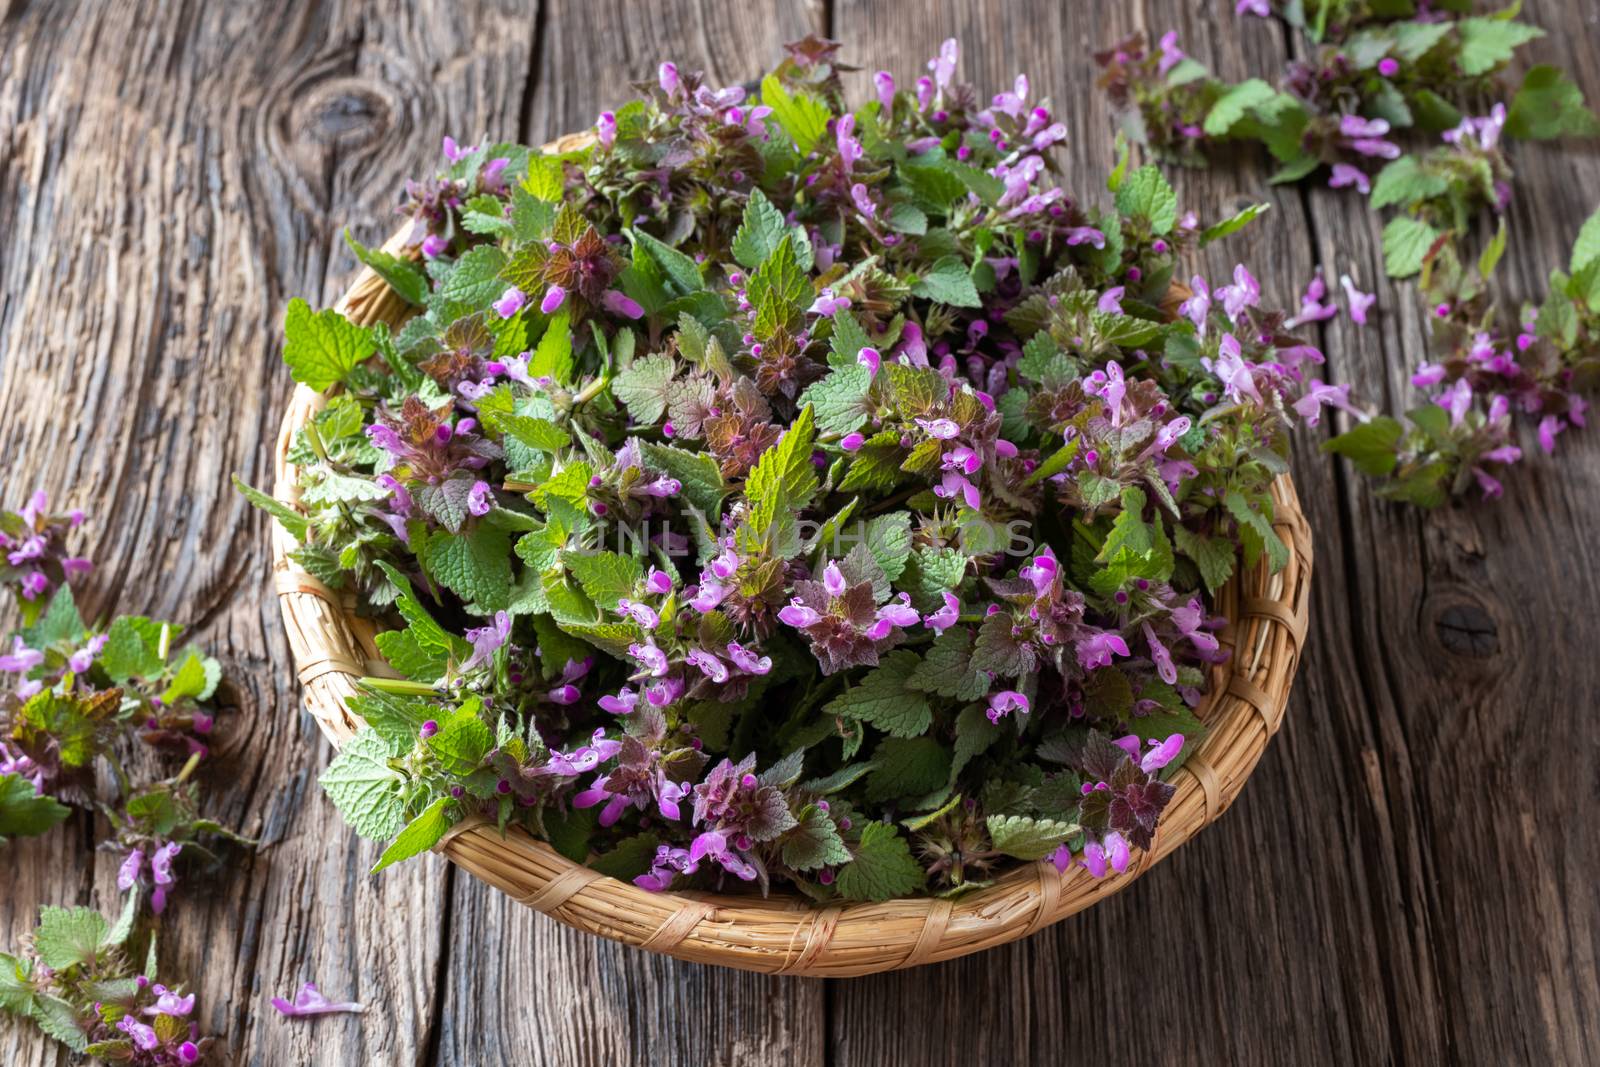 Fresh purple dead-nettle flowers in a basket